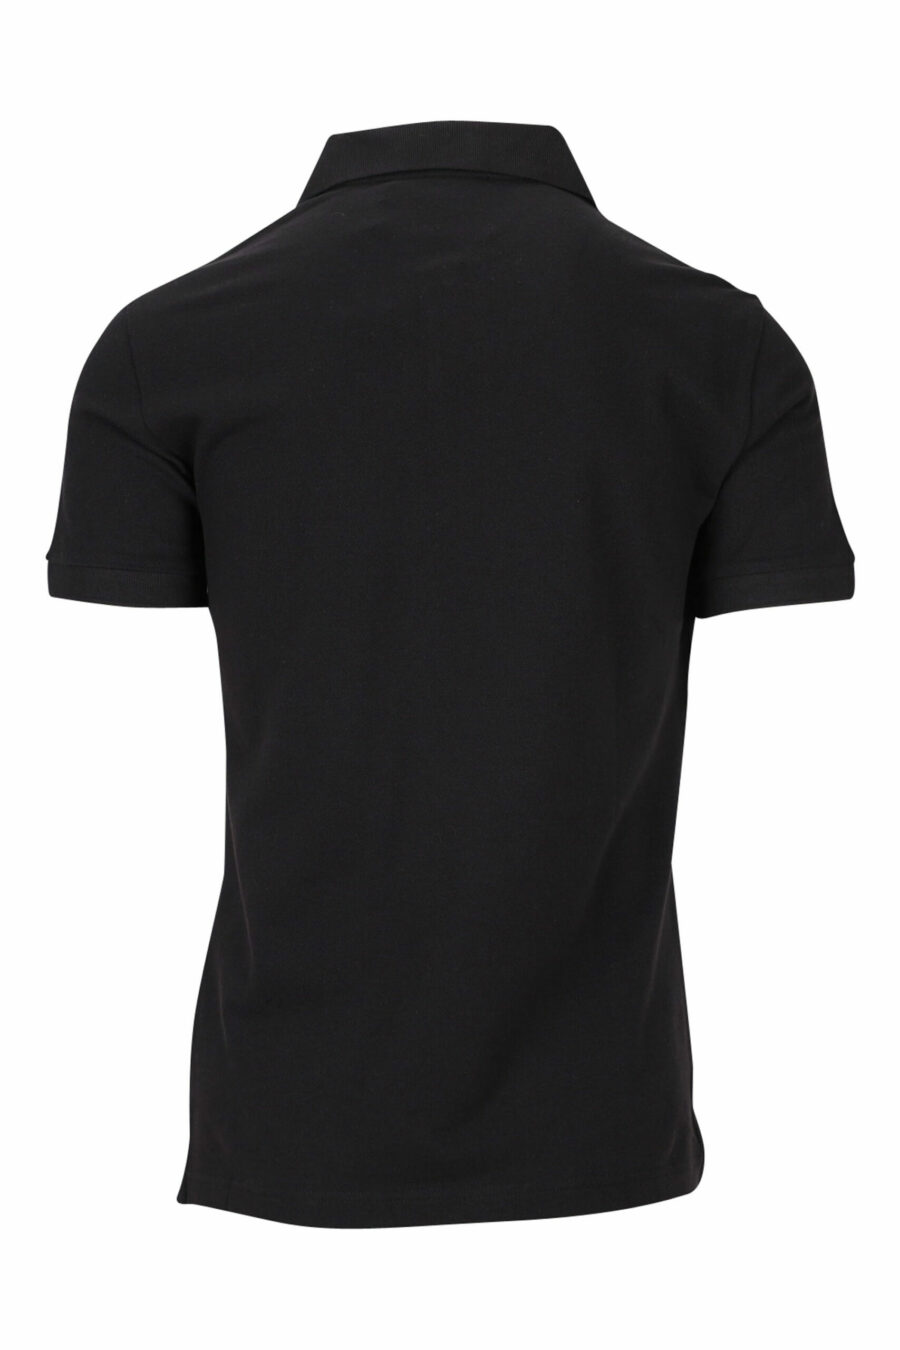 Schwarzes Poloshirt mit Reißverschluss und kontrastierendem kreisförmigen Mini-Logo - 8052019467918 1 skaliert